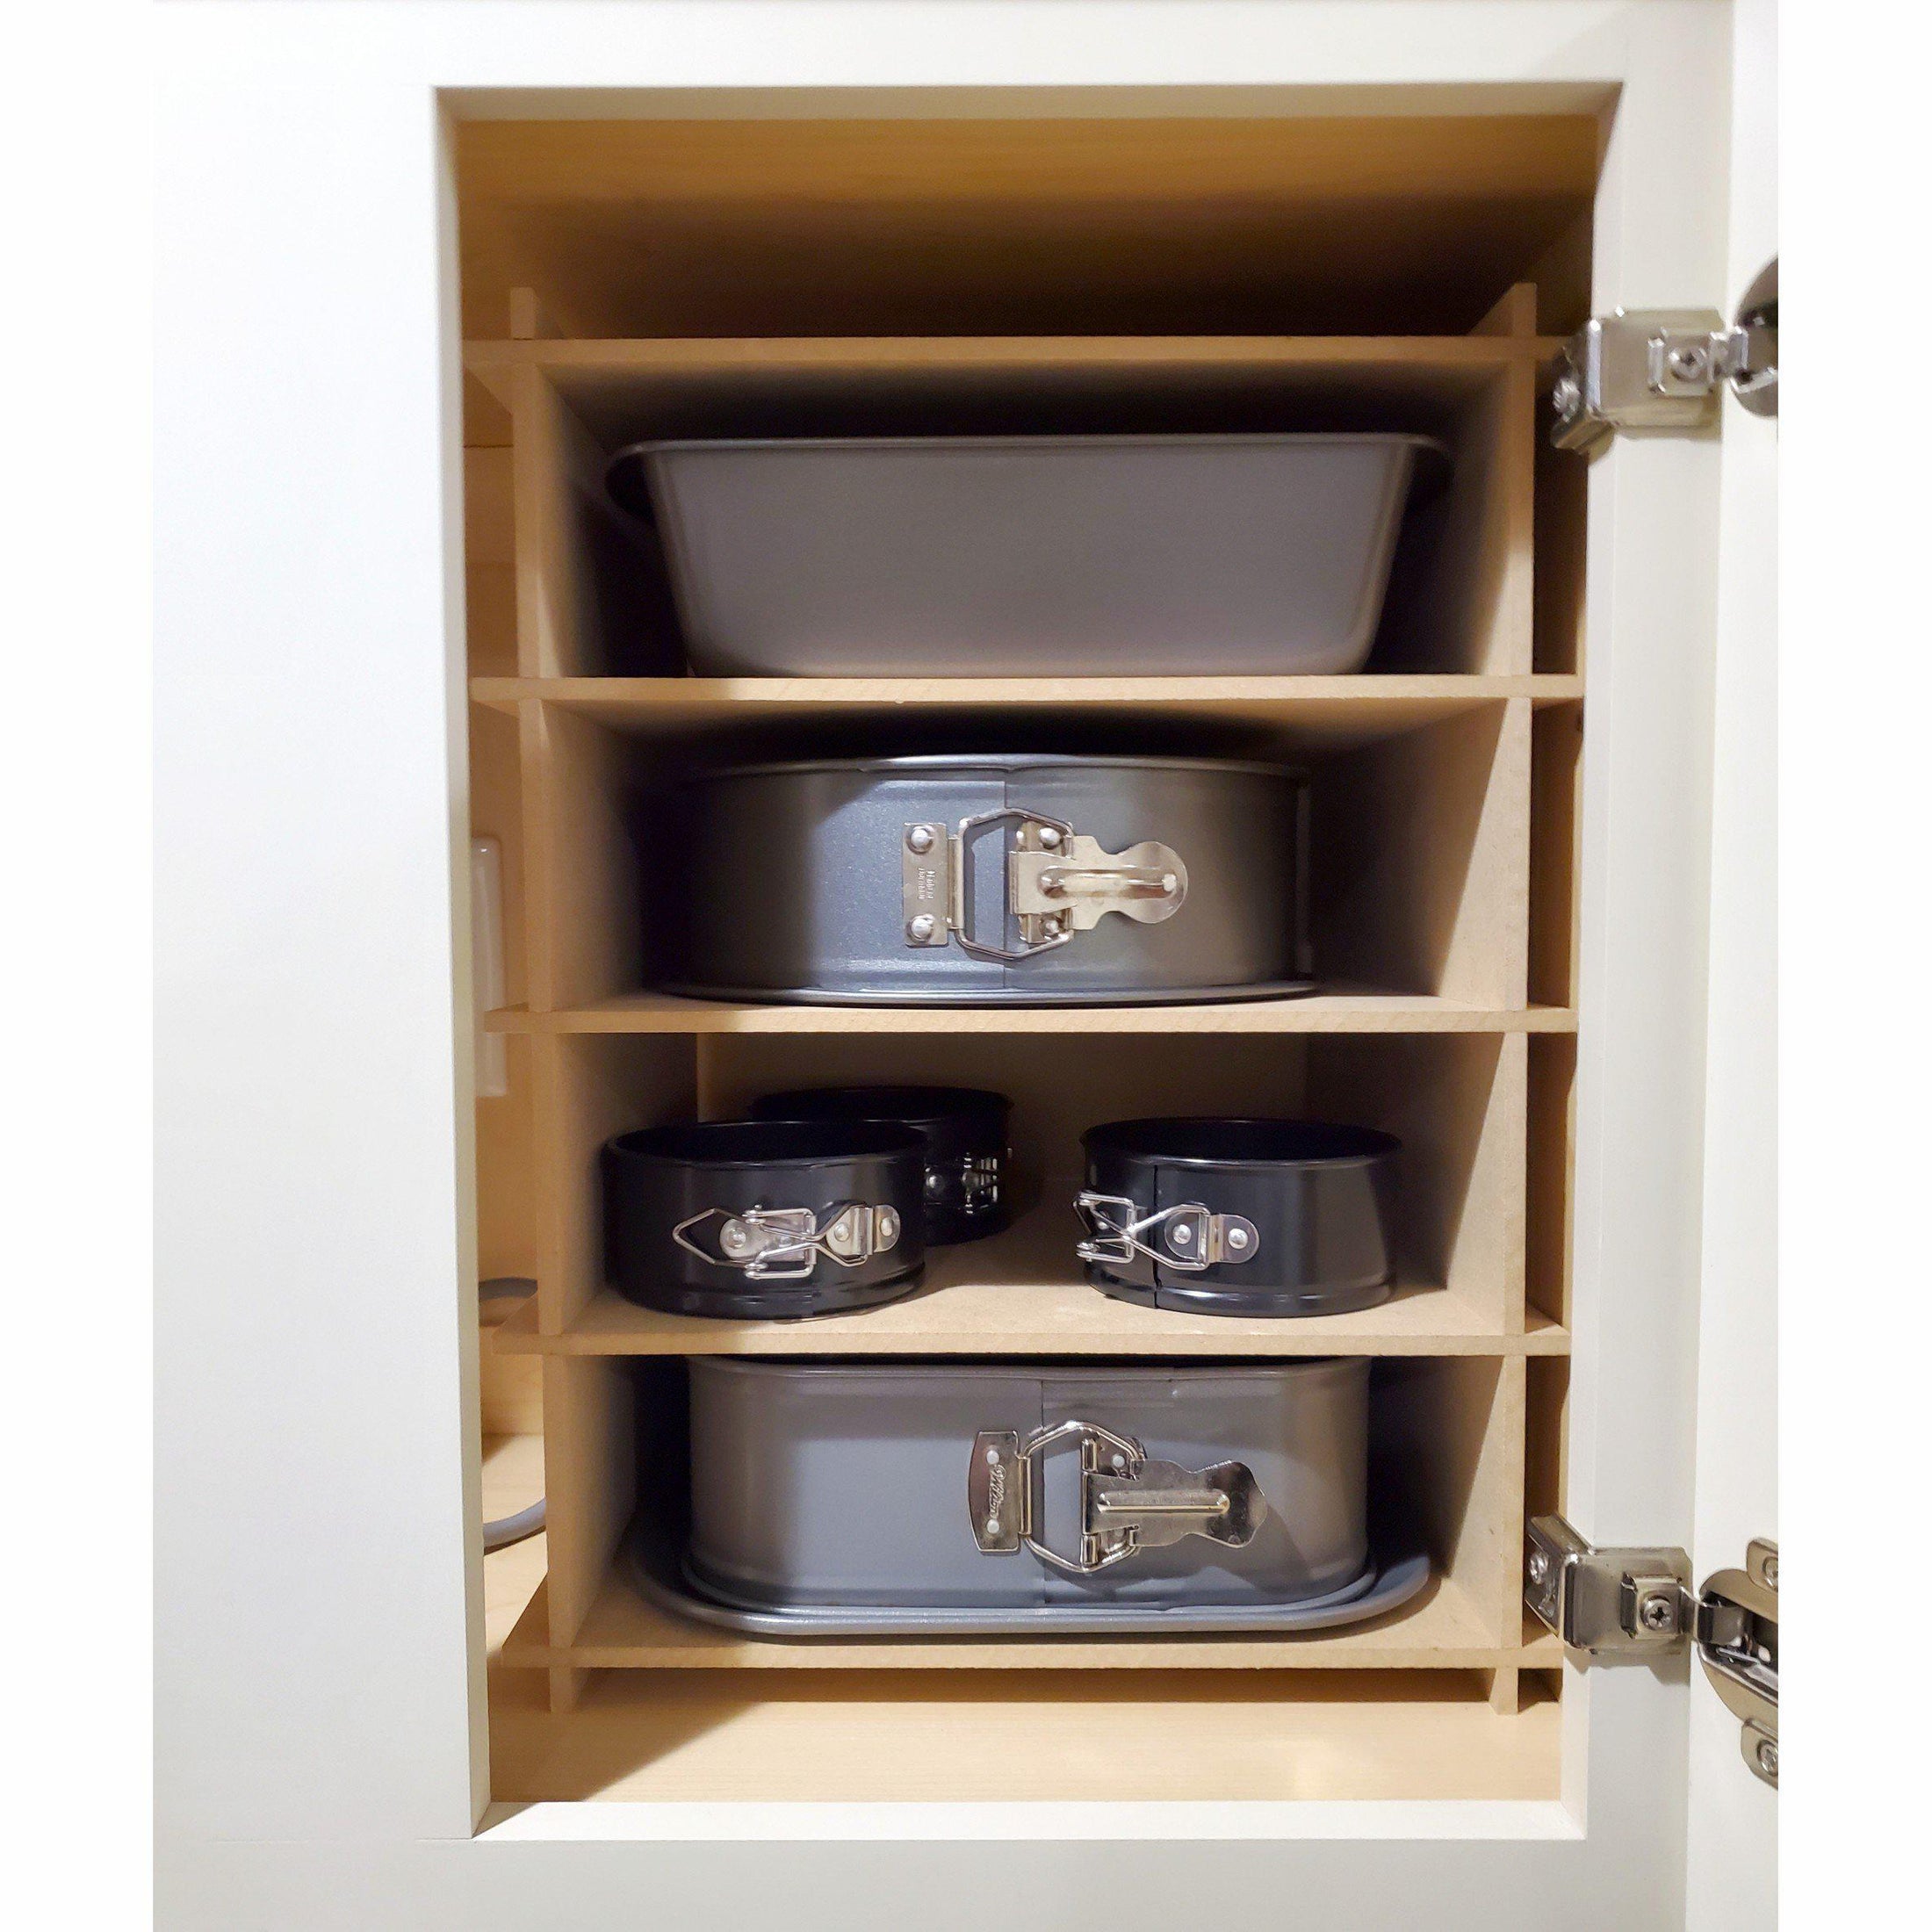 Kitchen Cabinet Cake Pan Storage Organizer-The Steady Hand